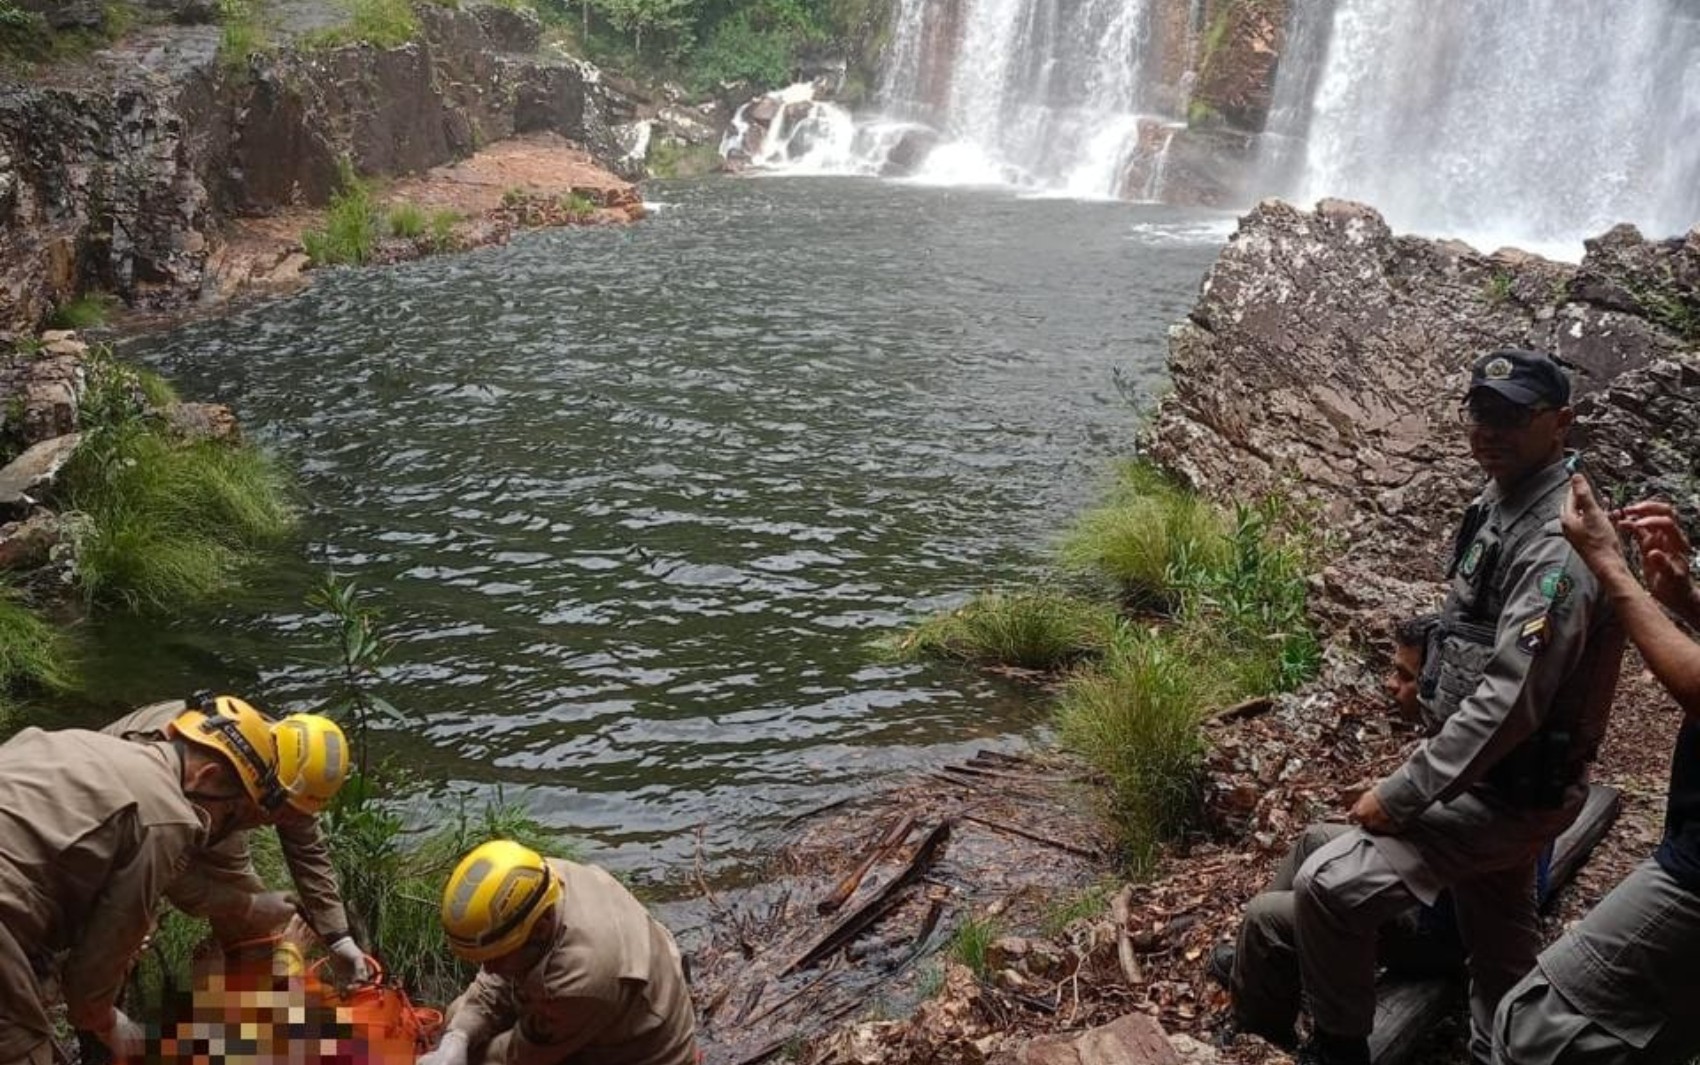 Corpo de turista que se afogou em cachoeira estava a 7 metros de profundidade e foi encontrado por funcionário, diz testemunha